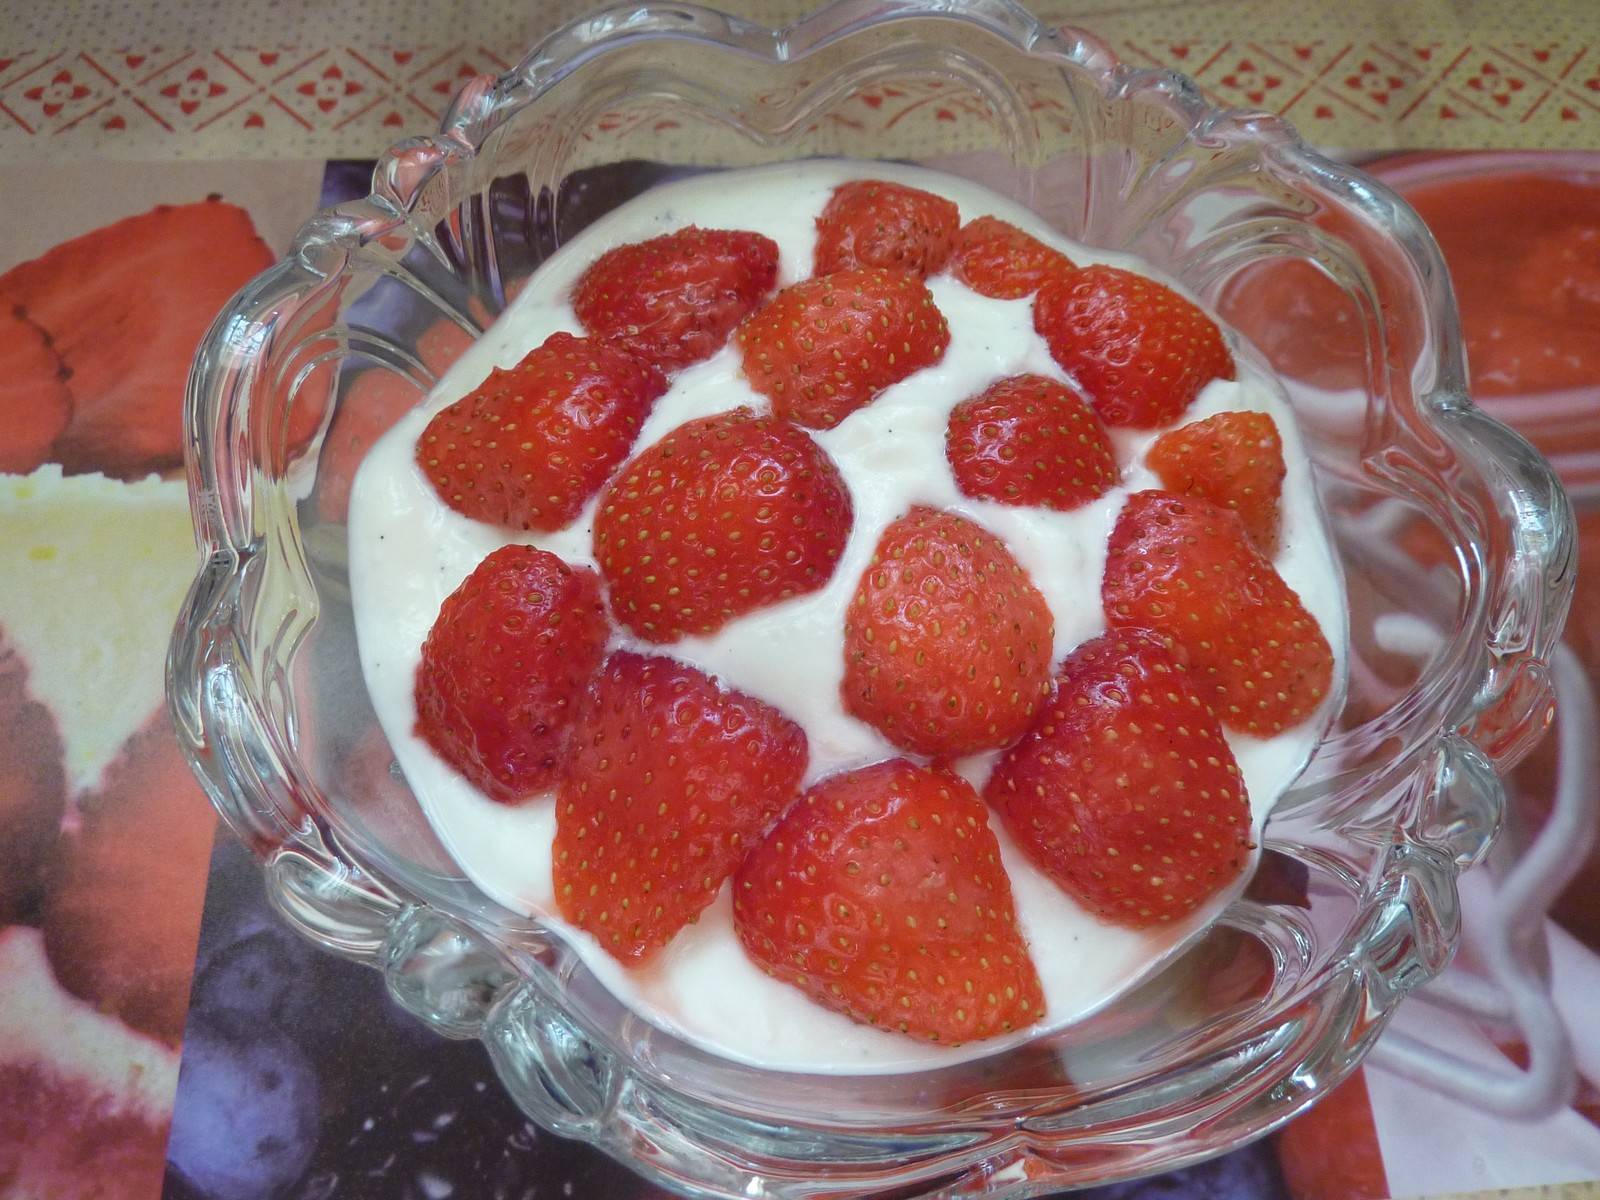 Vanilletopfen mit frischen Erdbeeren